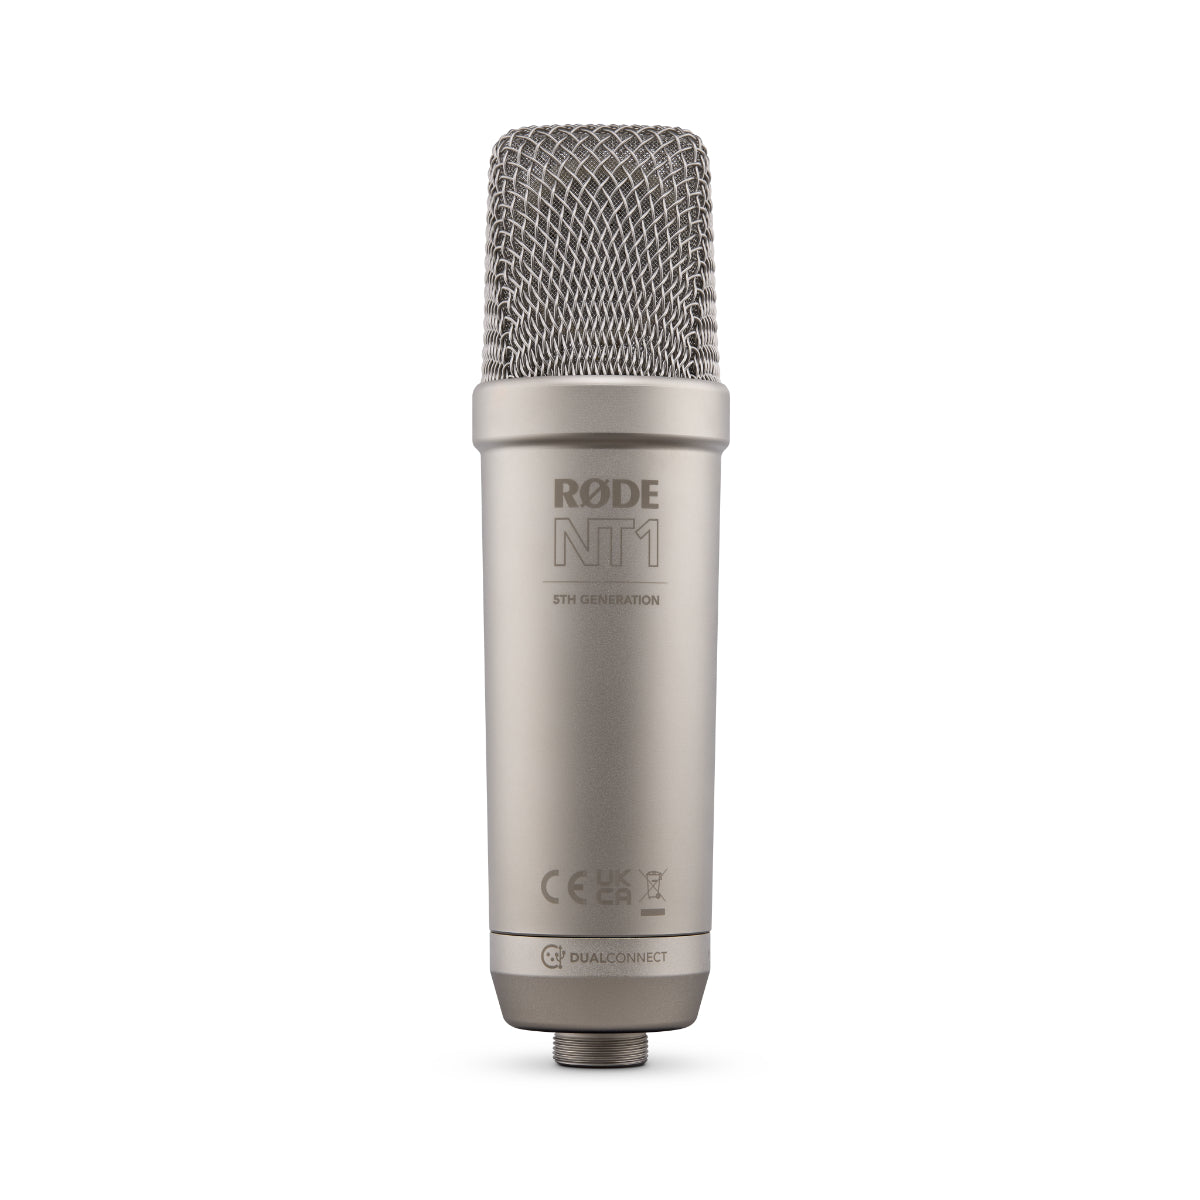 Rode NT1 Gen 5 Studio Cardioid Condenser Microphone Package